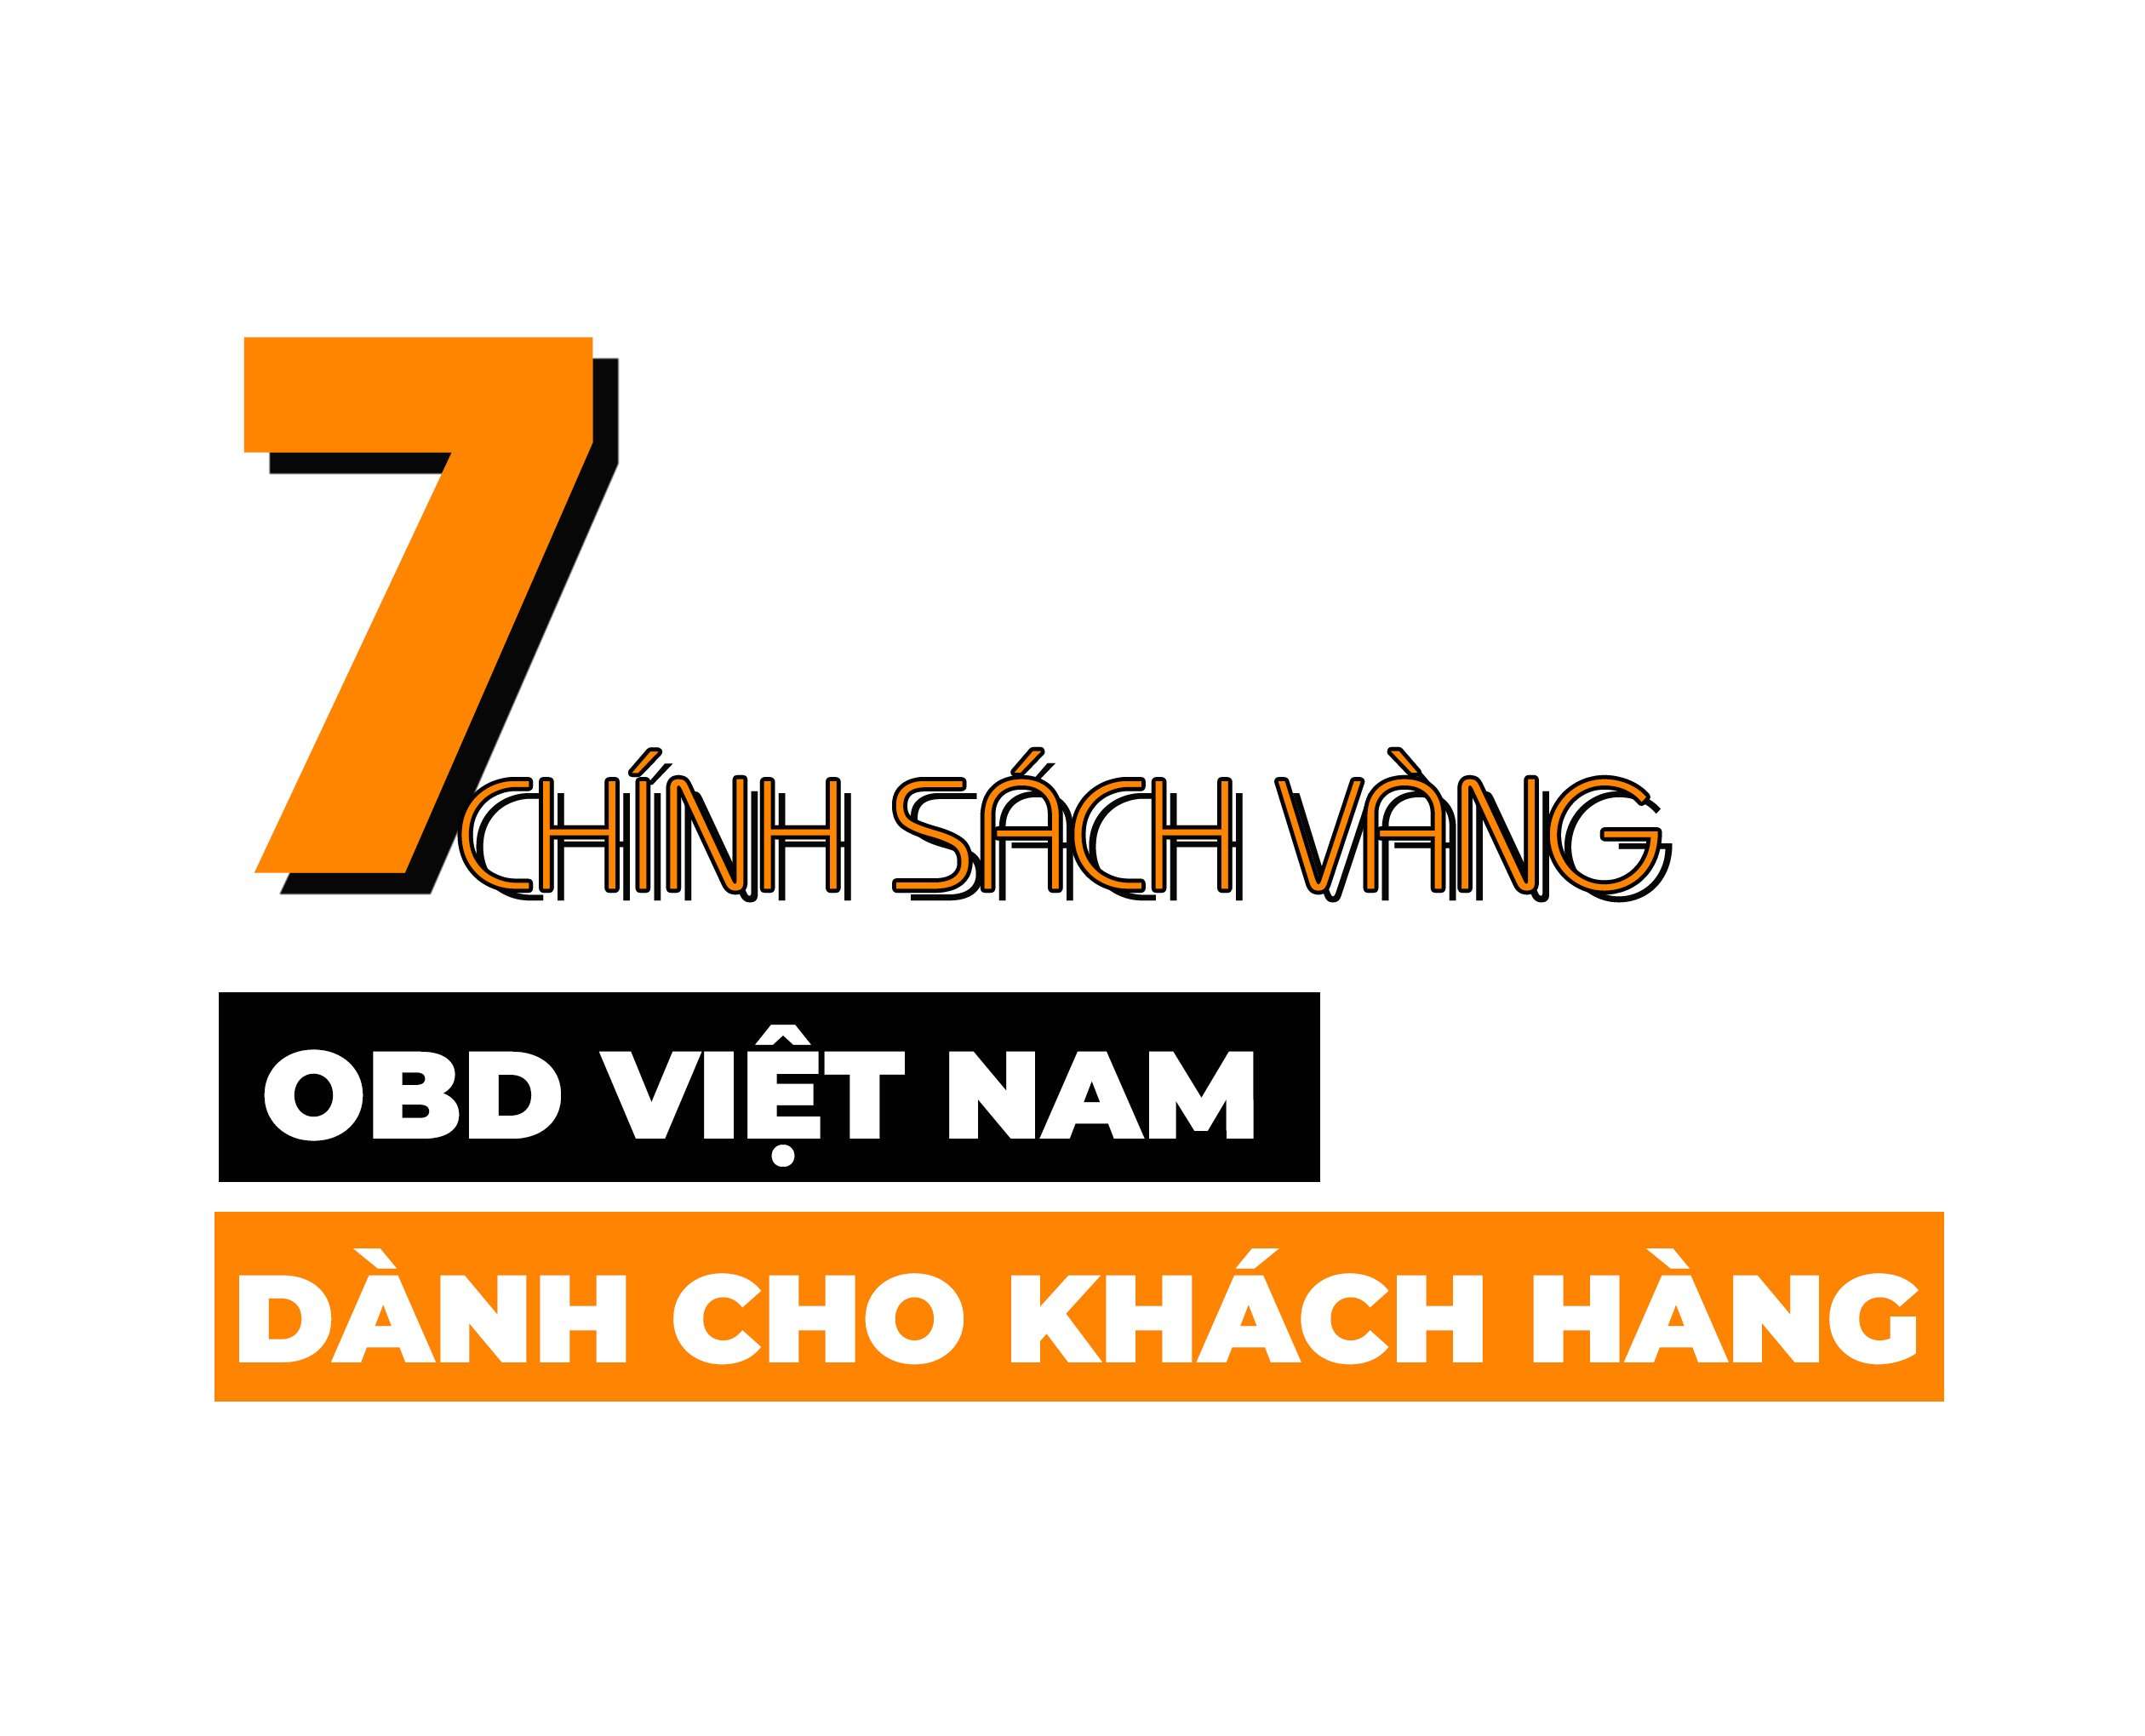 7-chinh-sach-vang-obdvietnam-danh-cho-khach-hang